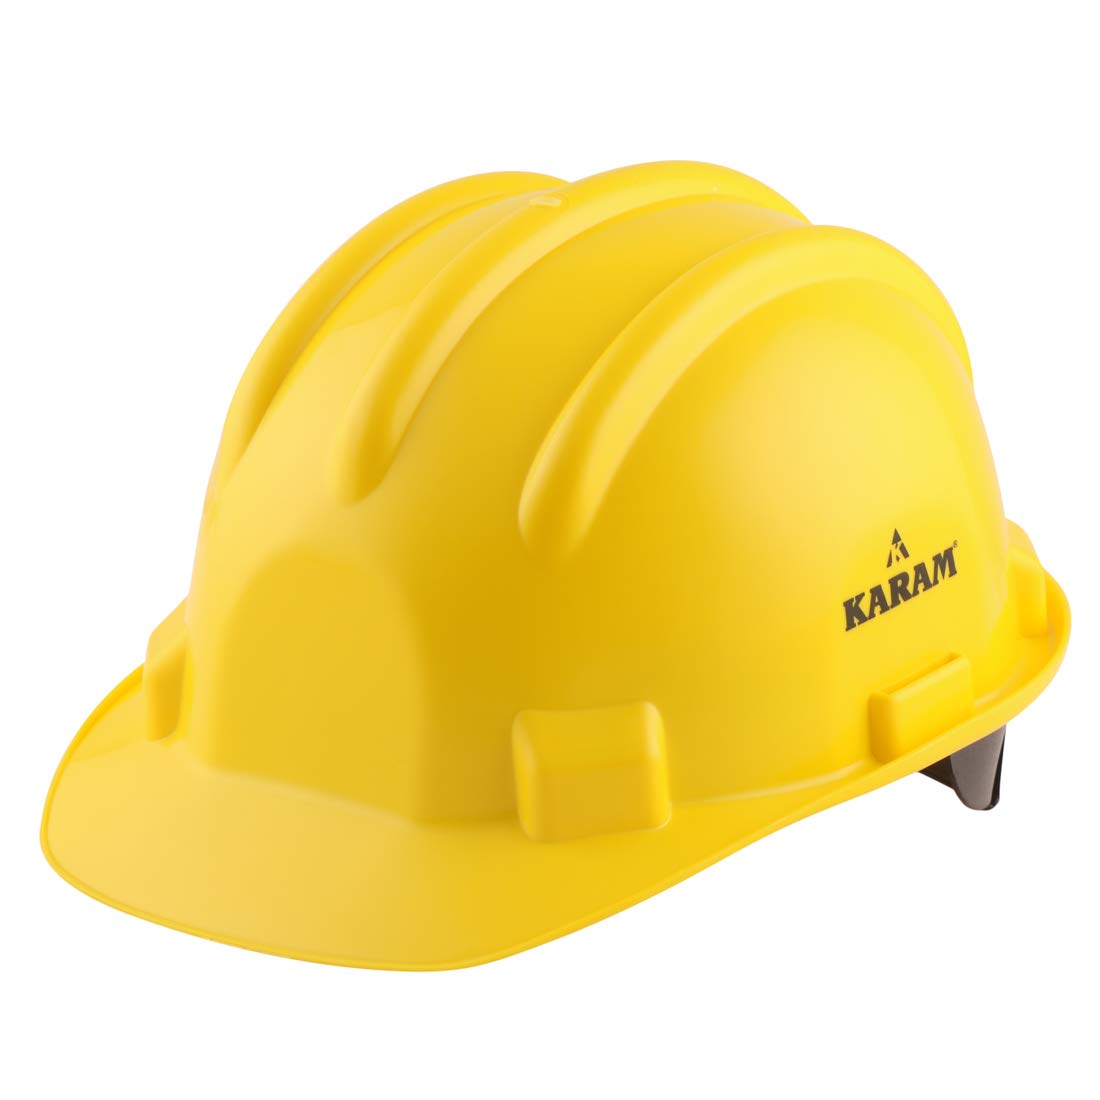 helmet - shivaji construction